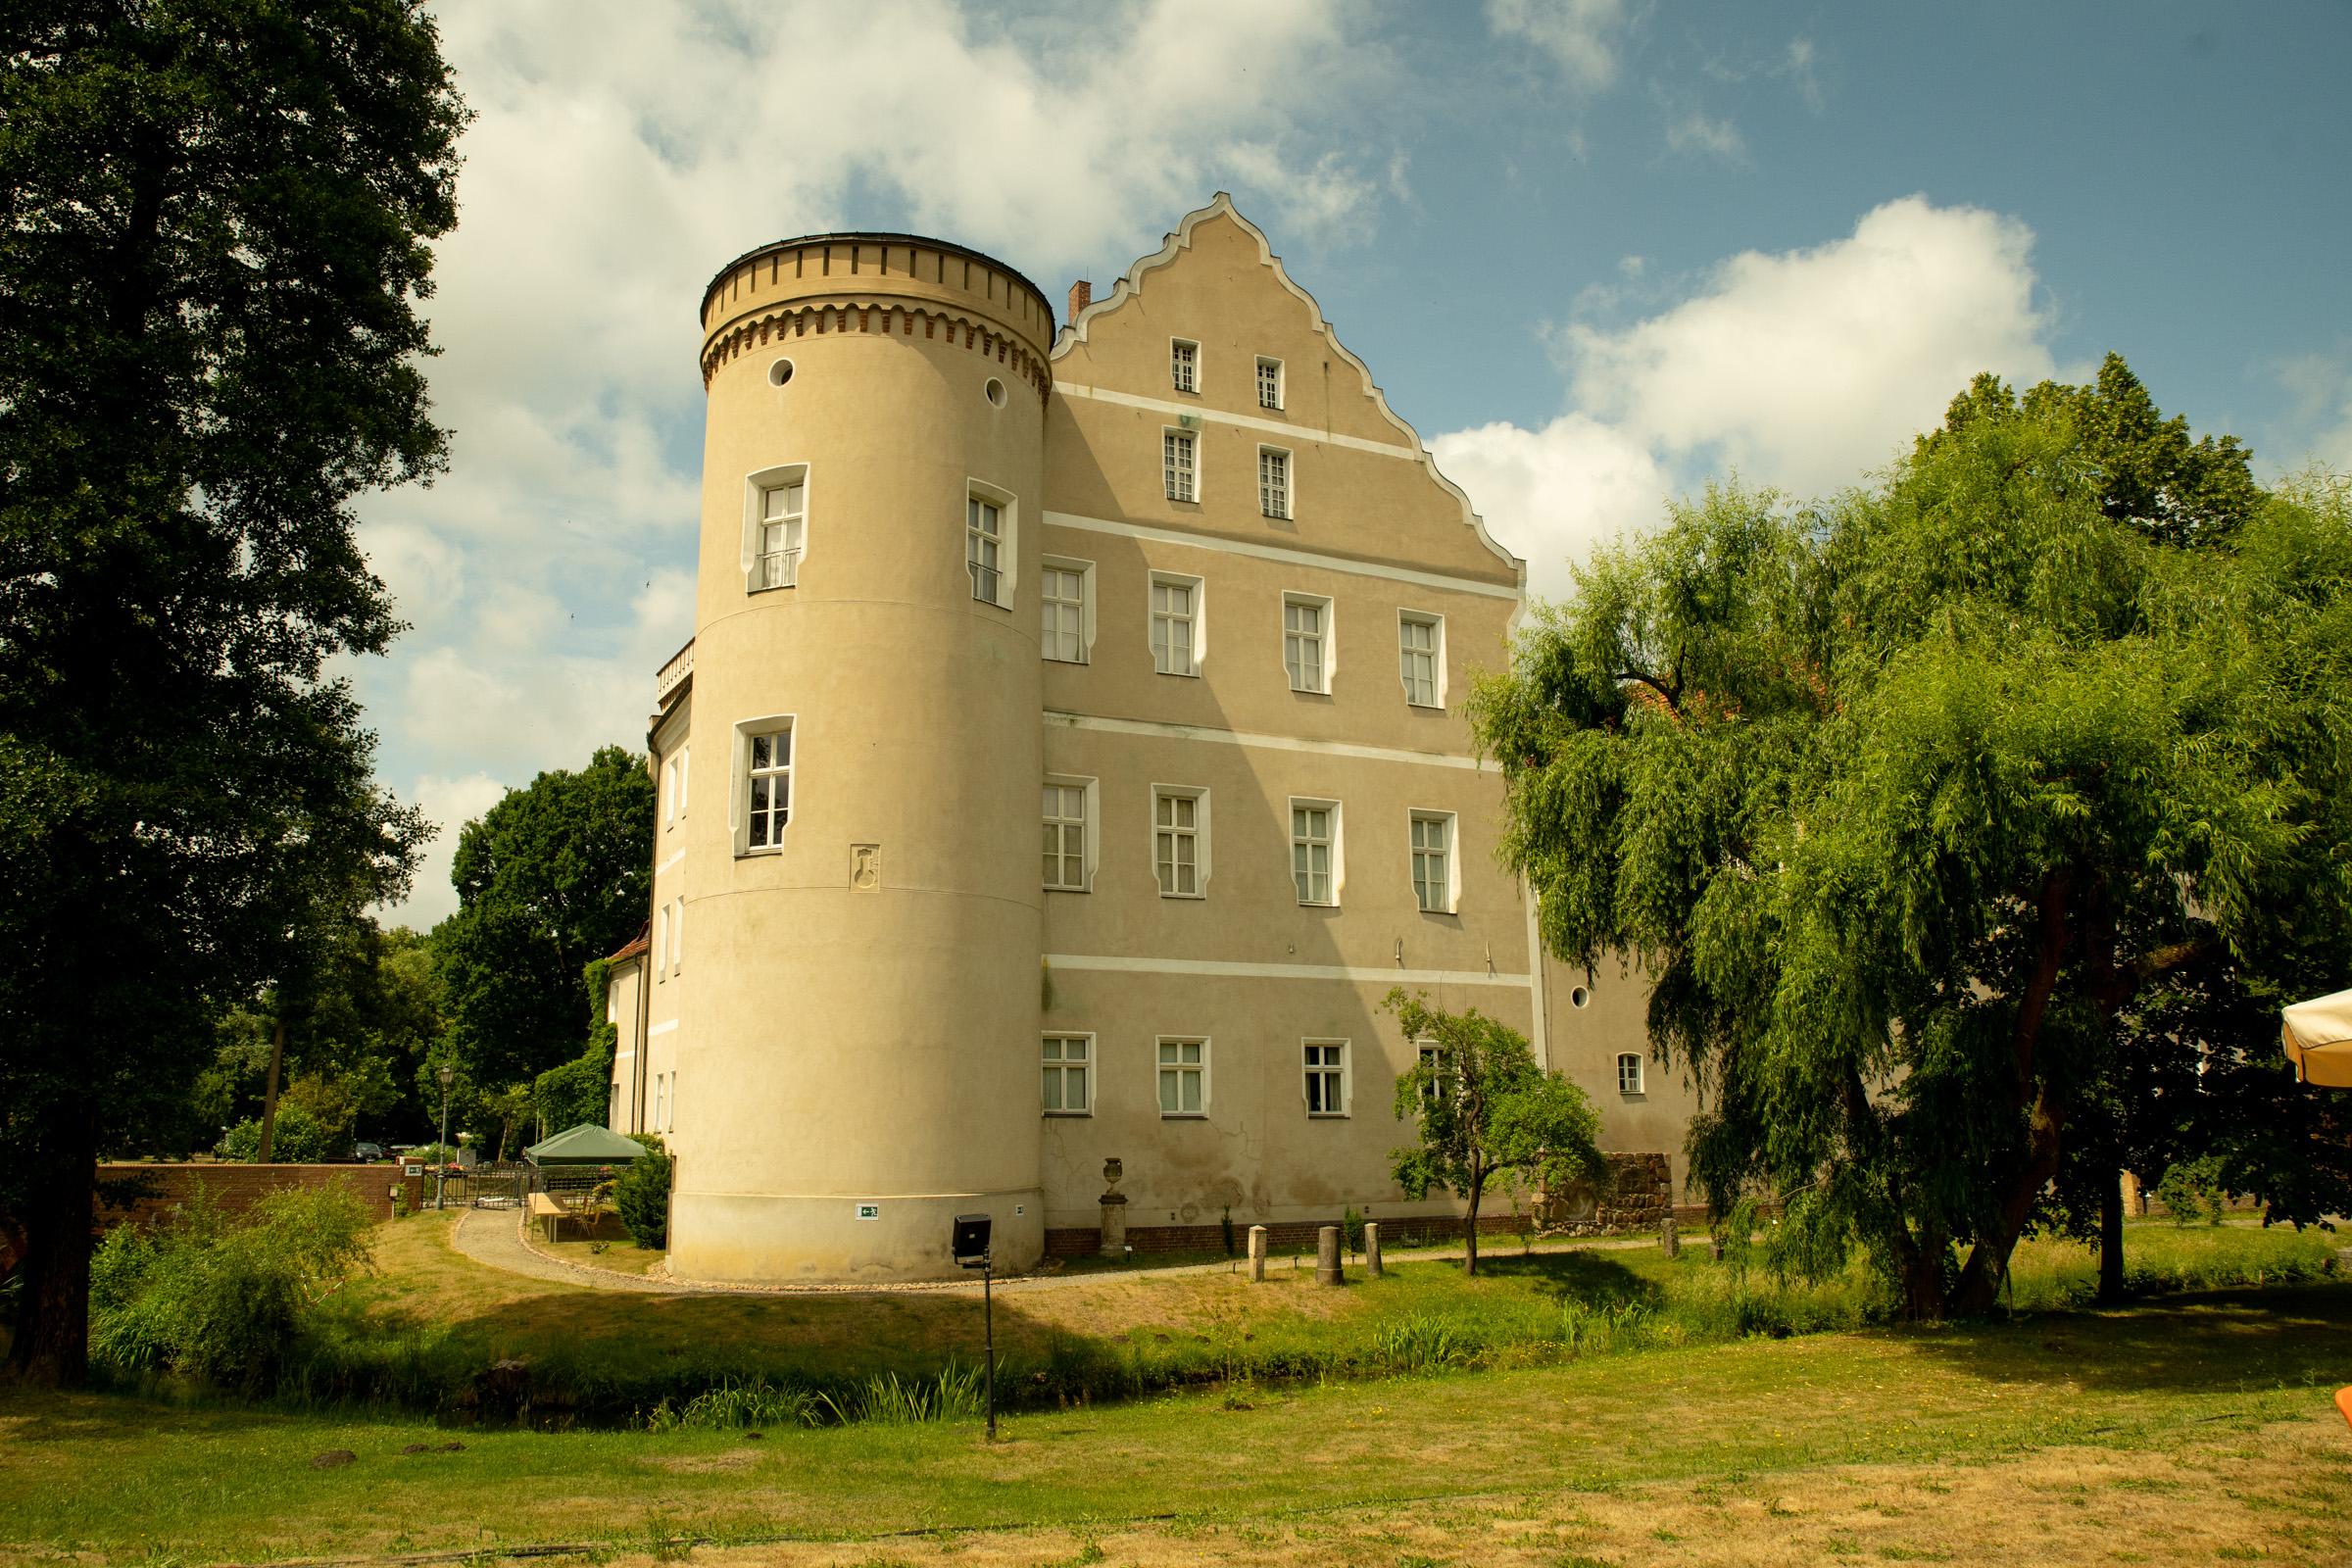 Schlossgebäude in Parklandschaft